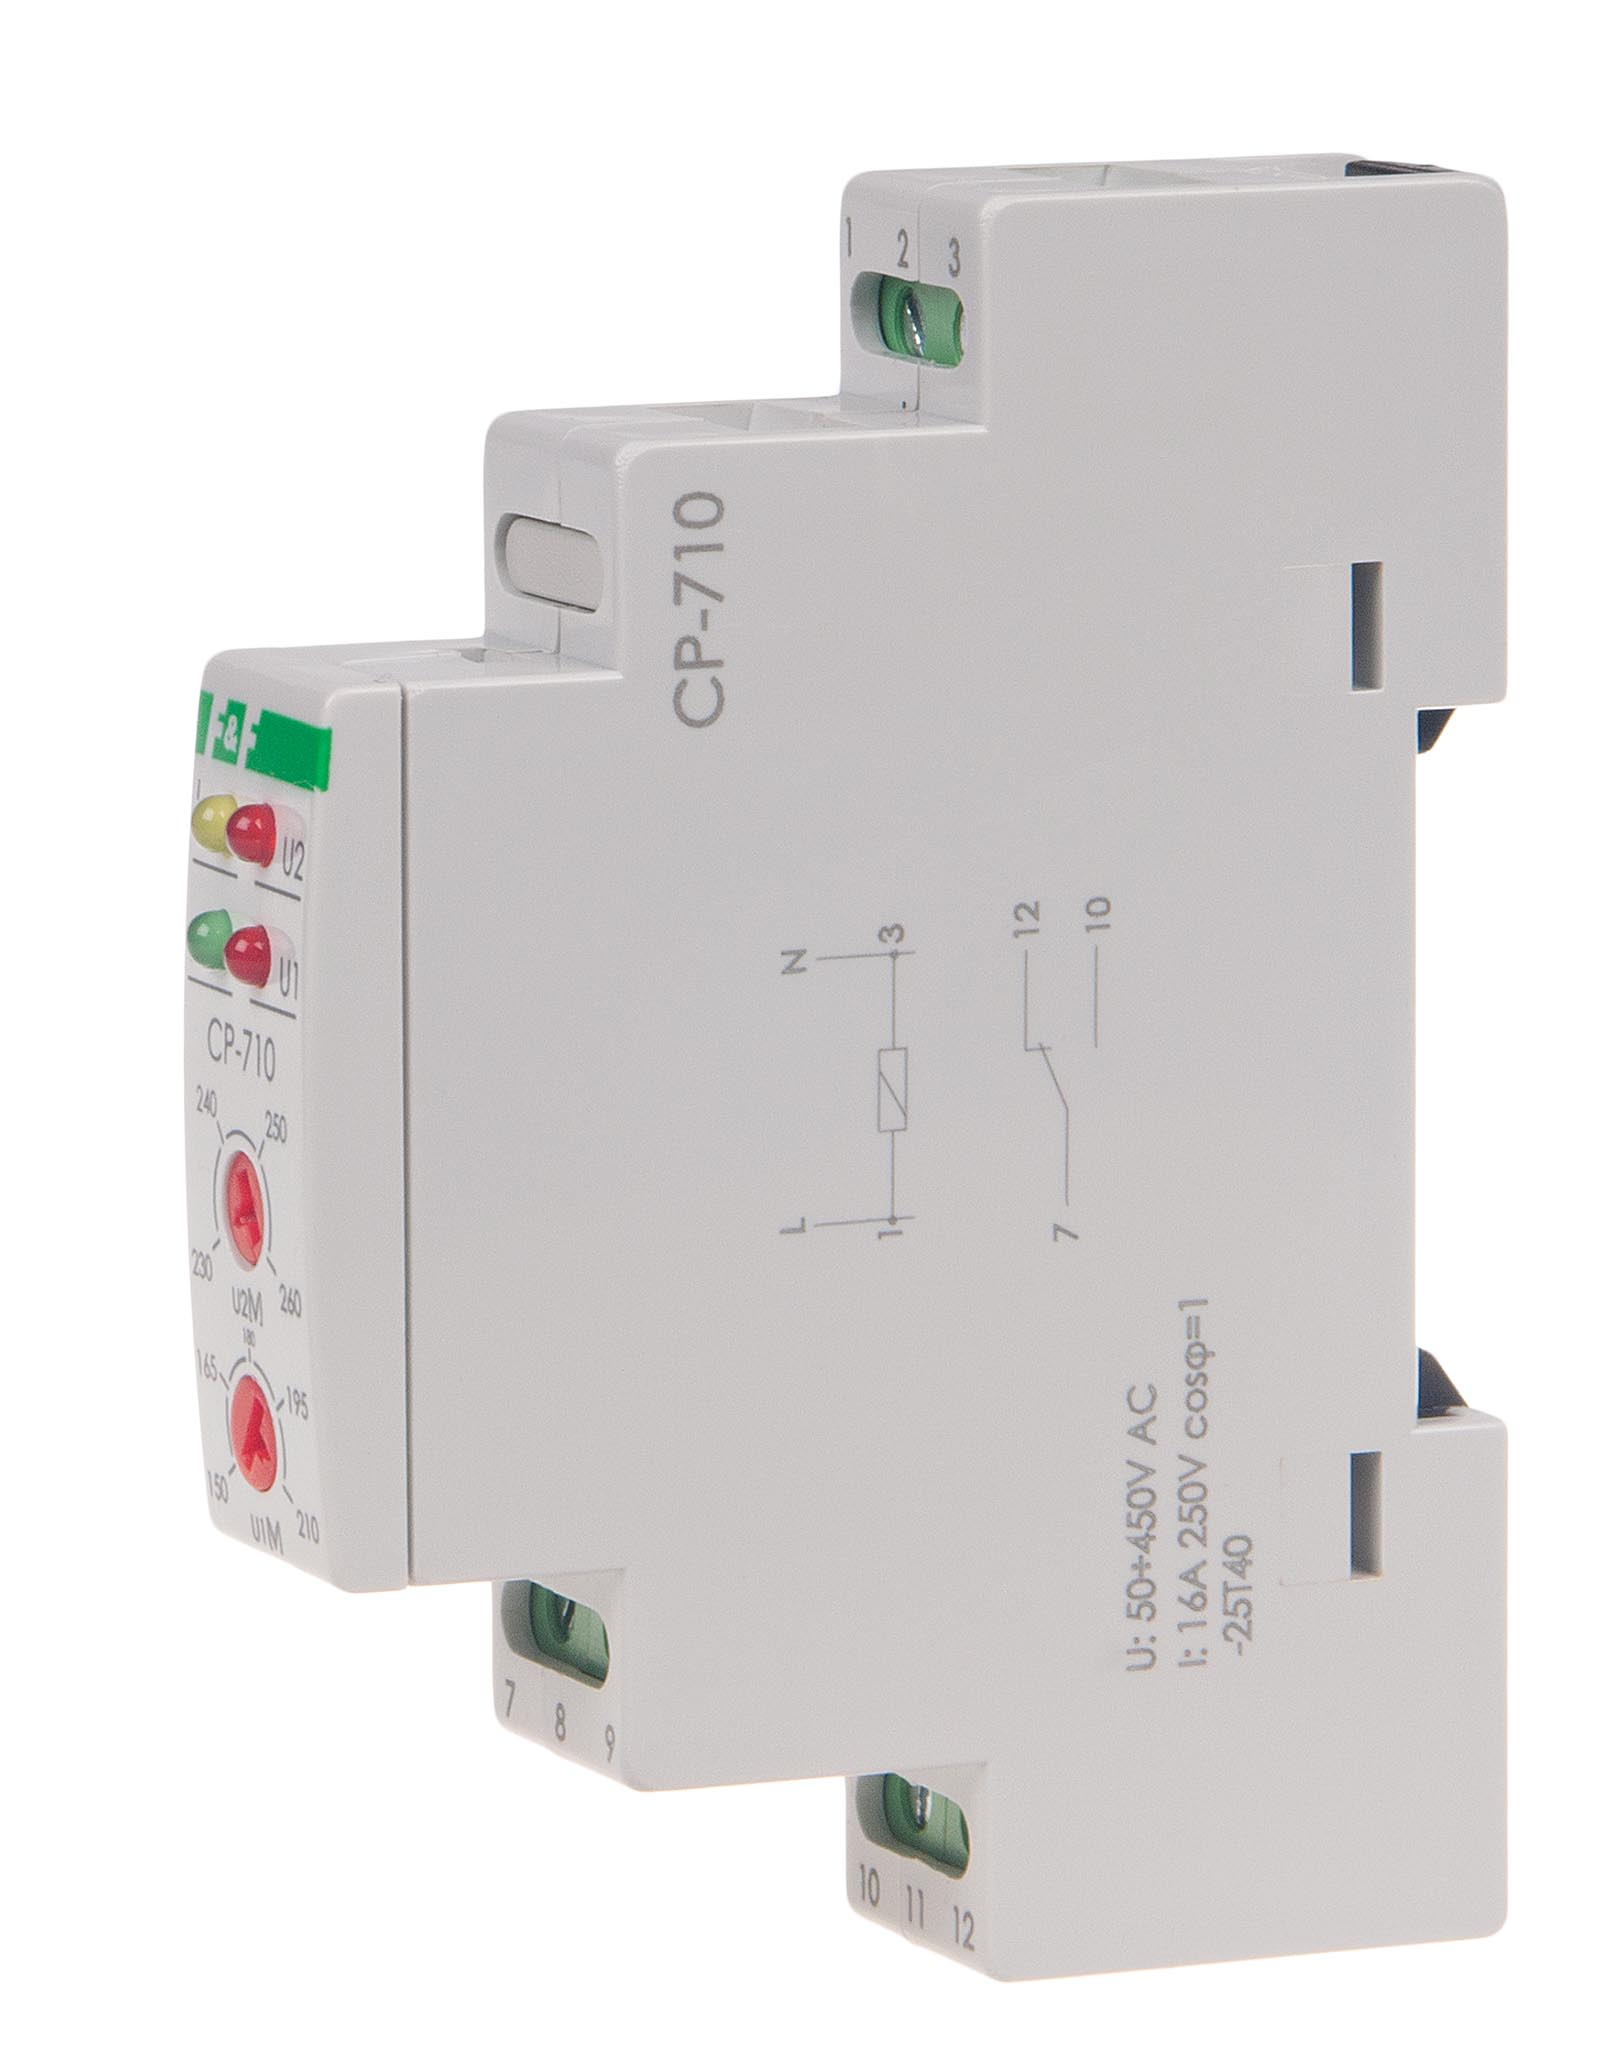 CP-710 voltage relays